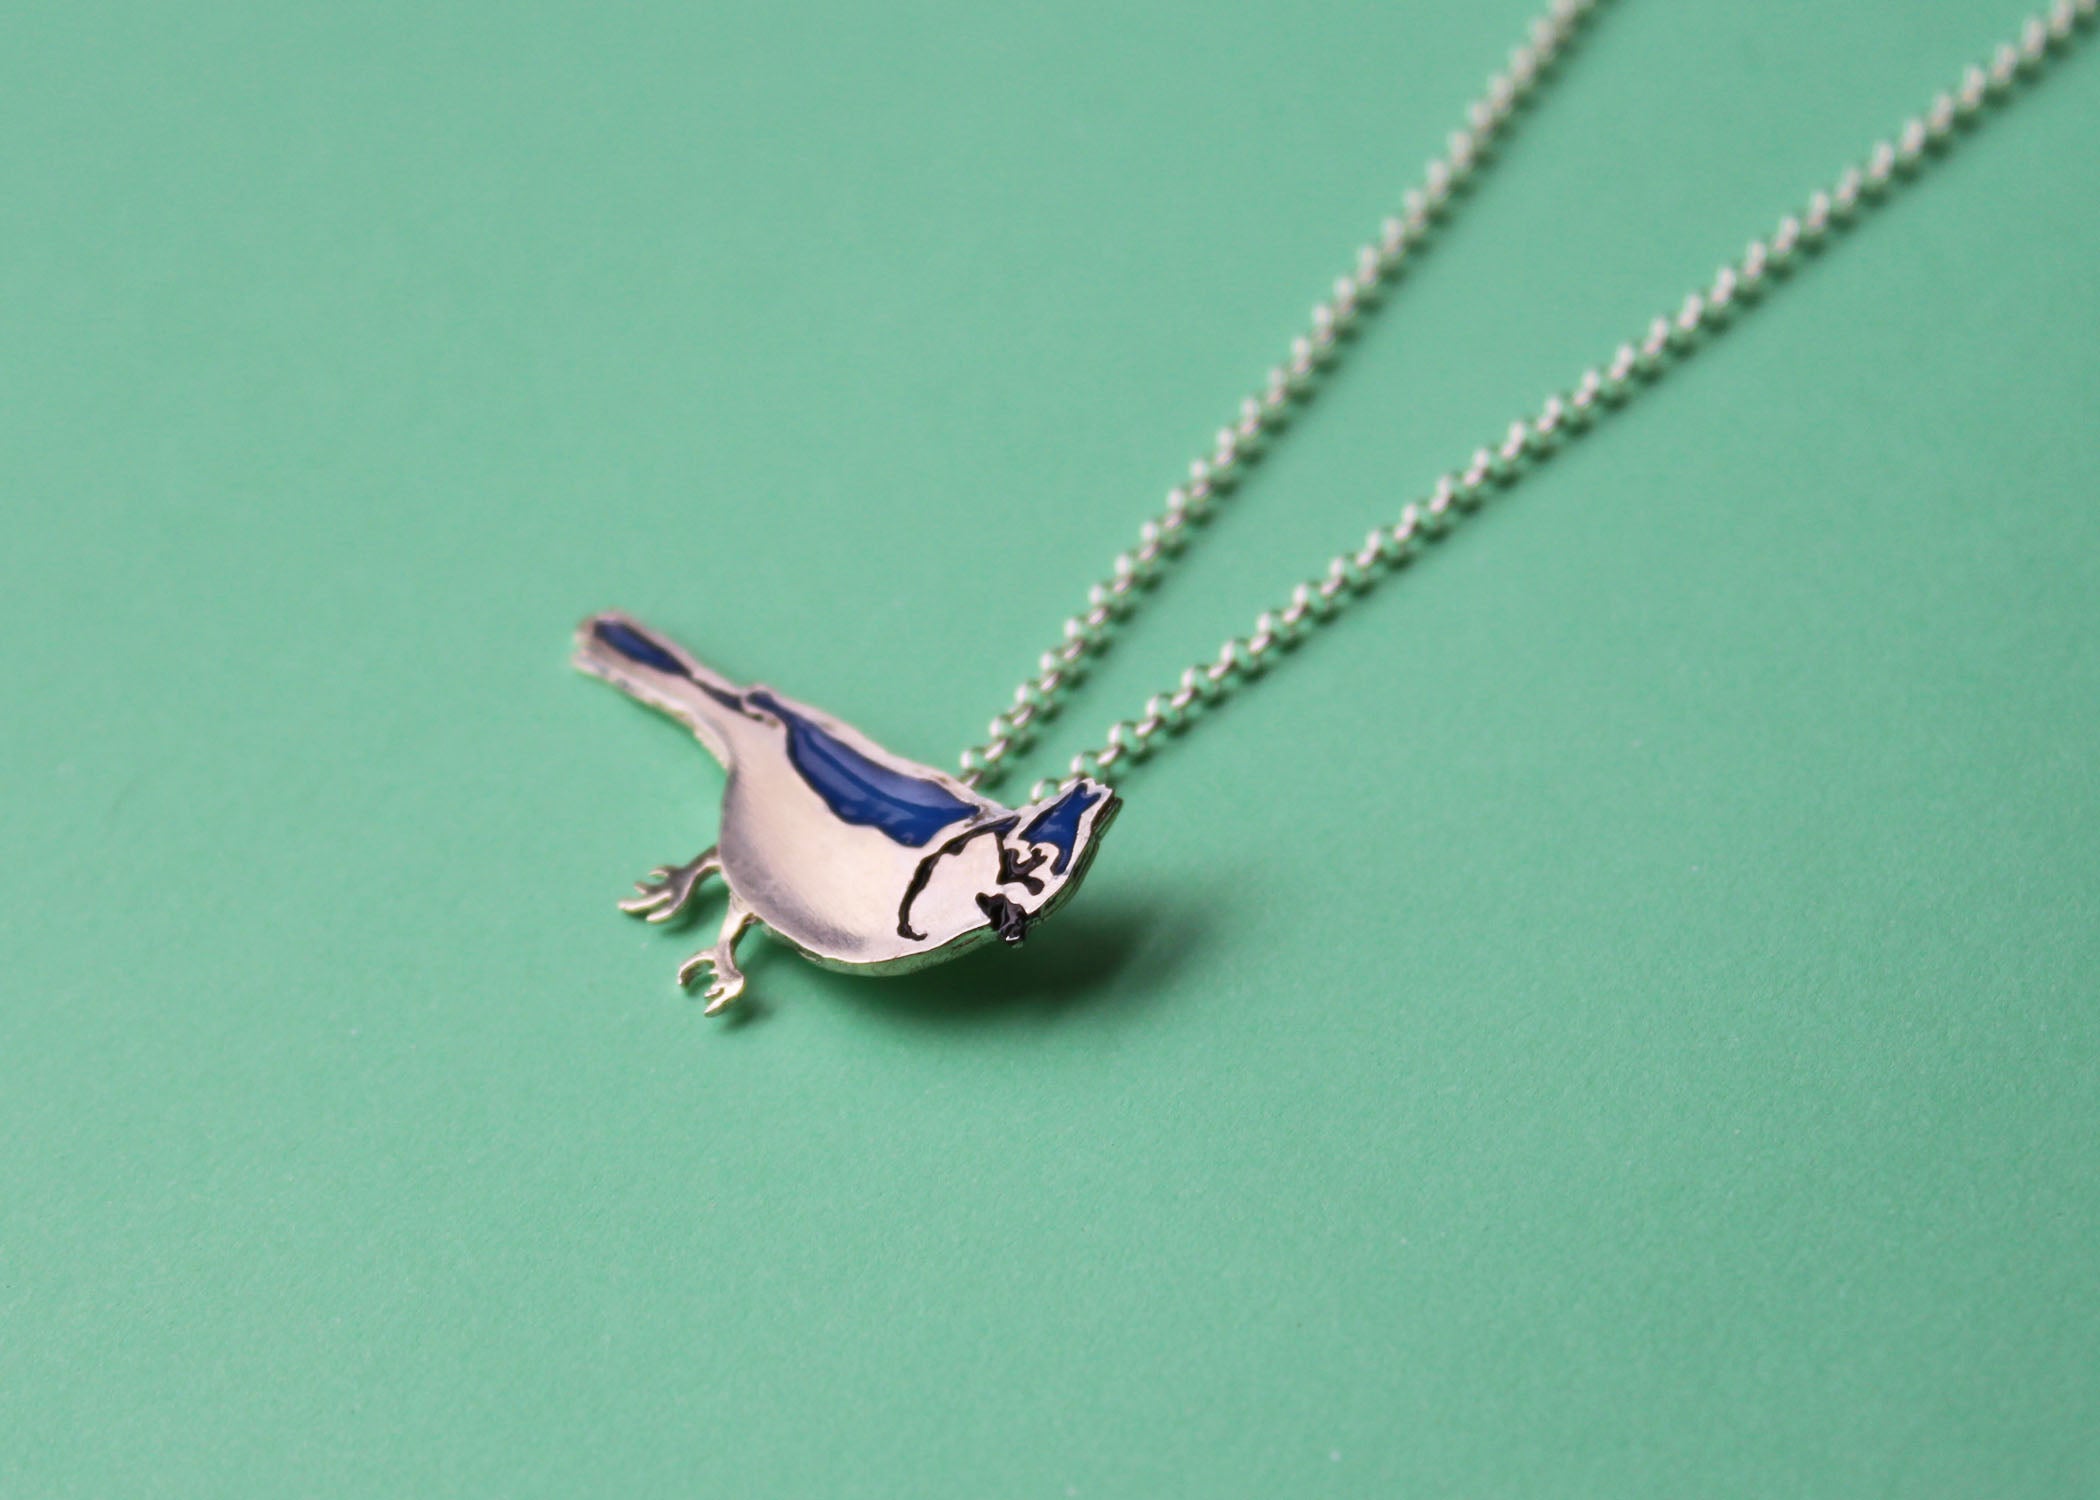 Ribbon Necklace Blue Jay / Shiny